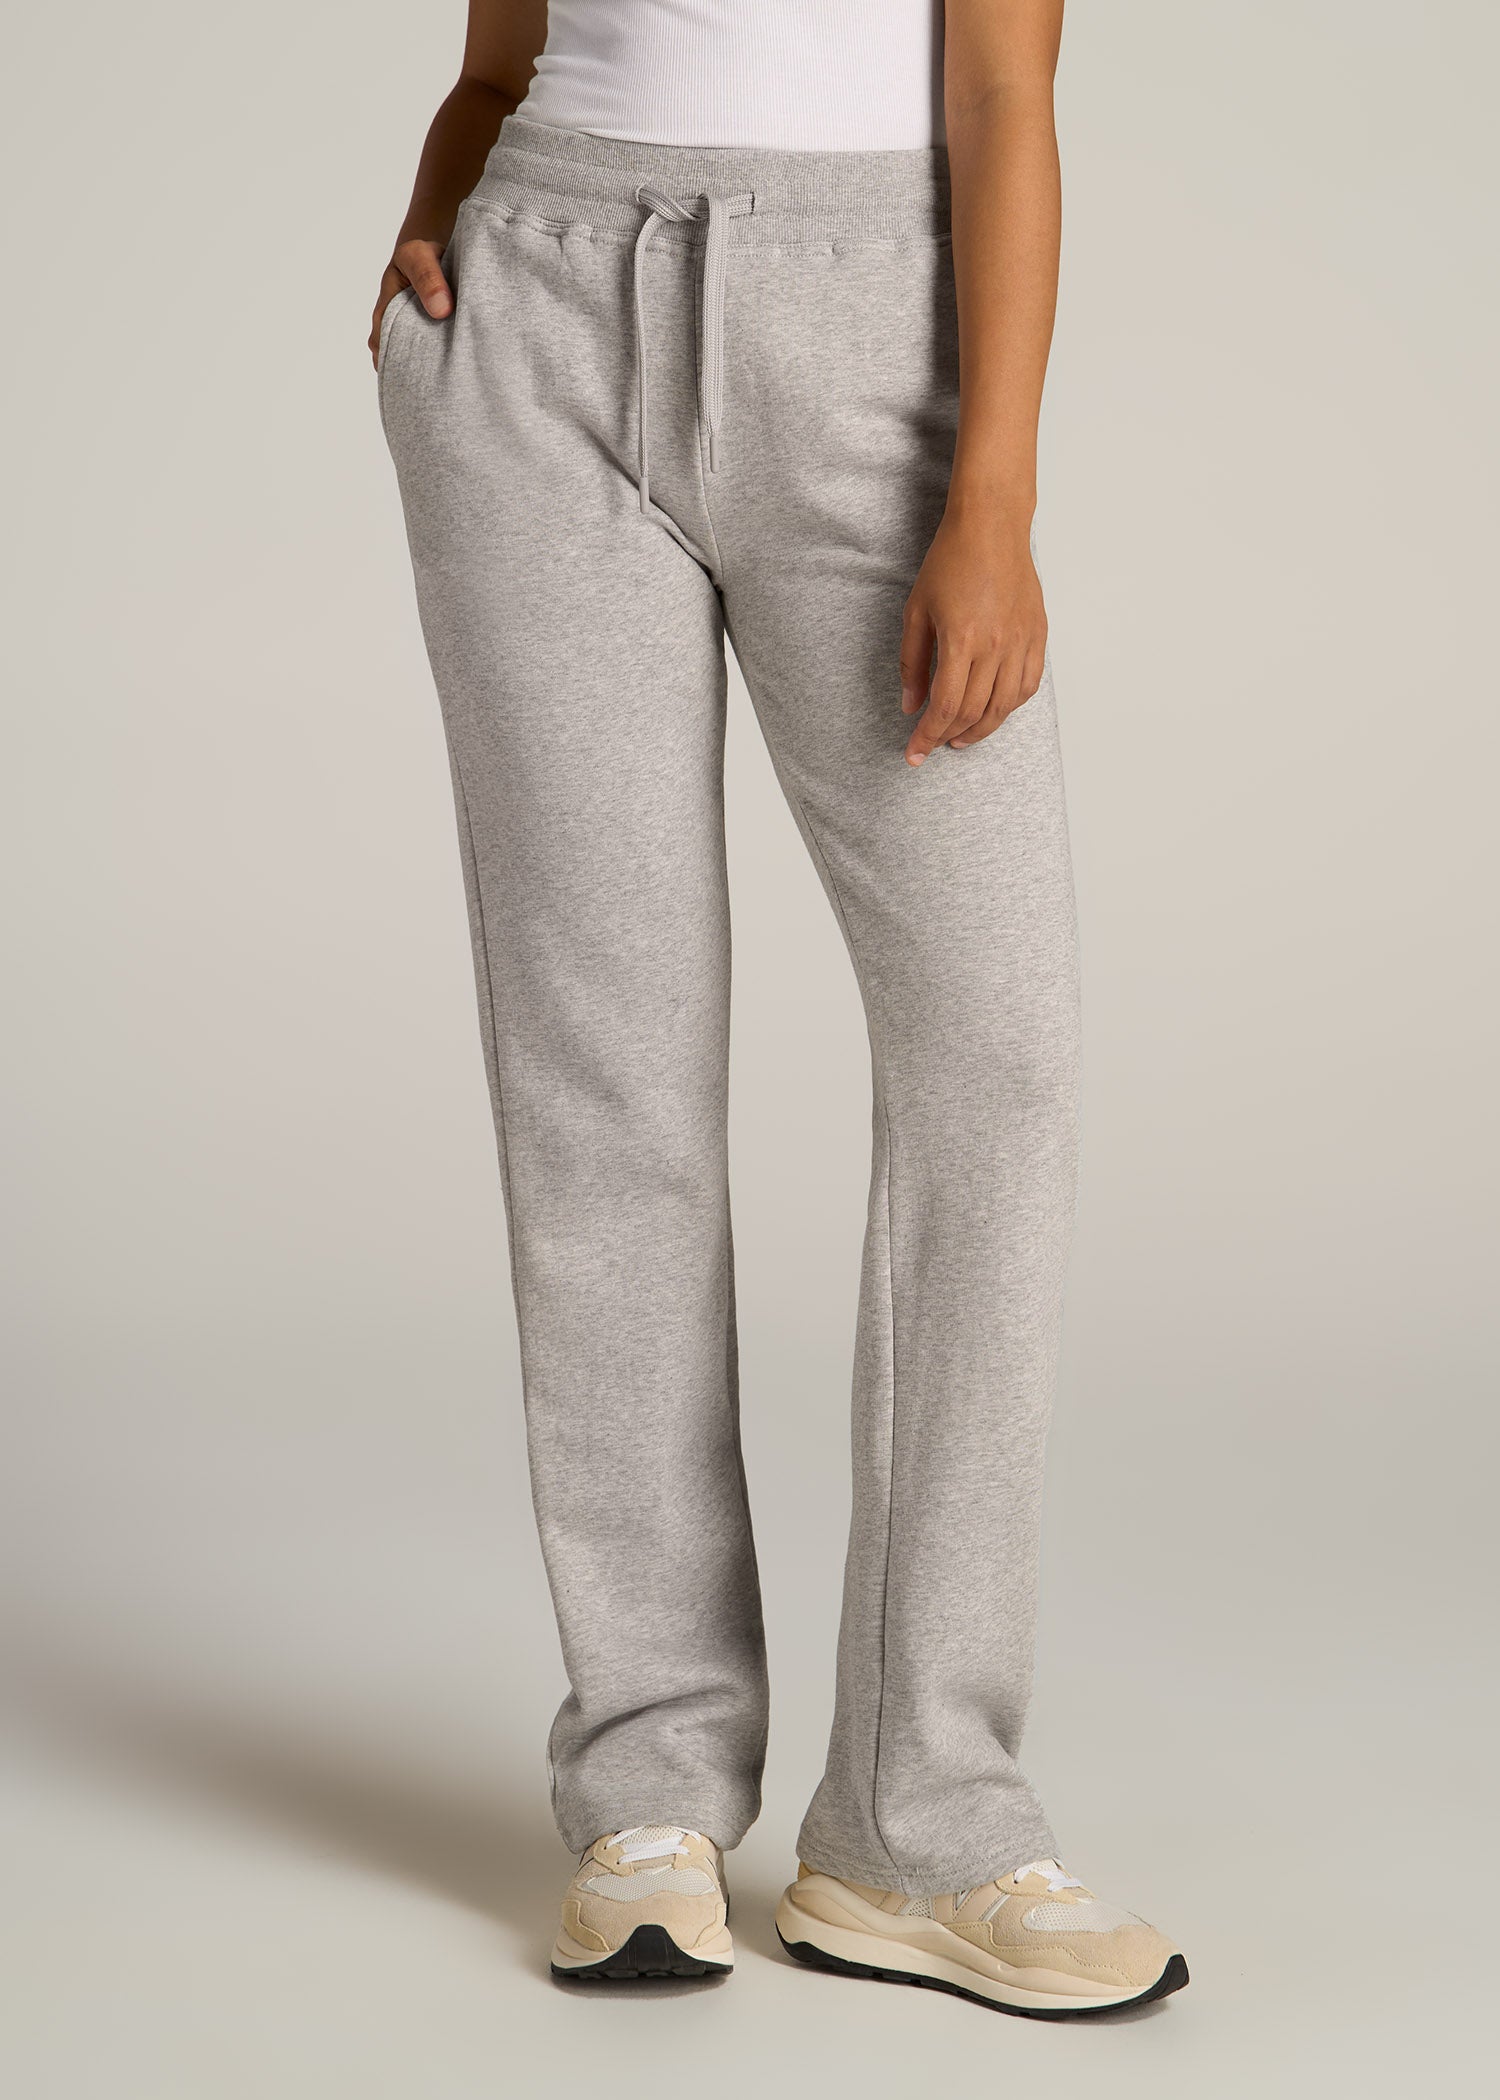 http://americantall.com/cdn/shop/files/American-Tall-Women-Wearever-Fleece-Open-Bottom-Pant-Grey-Mix-front.jpg?v=1692900761